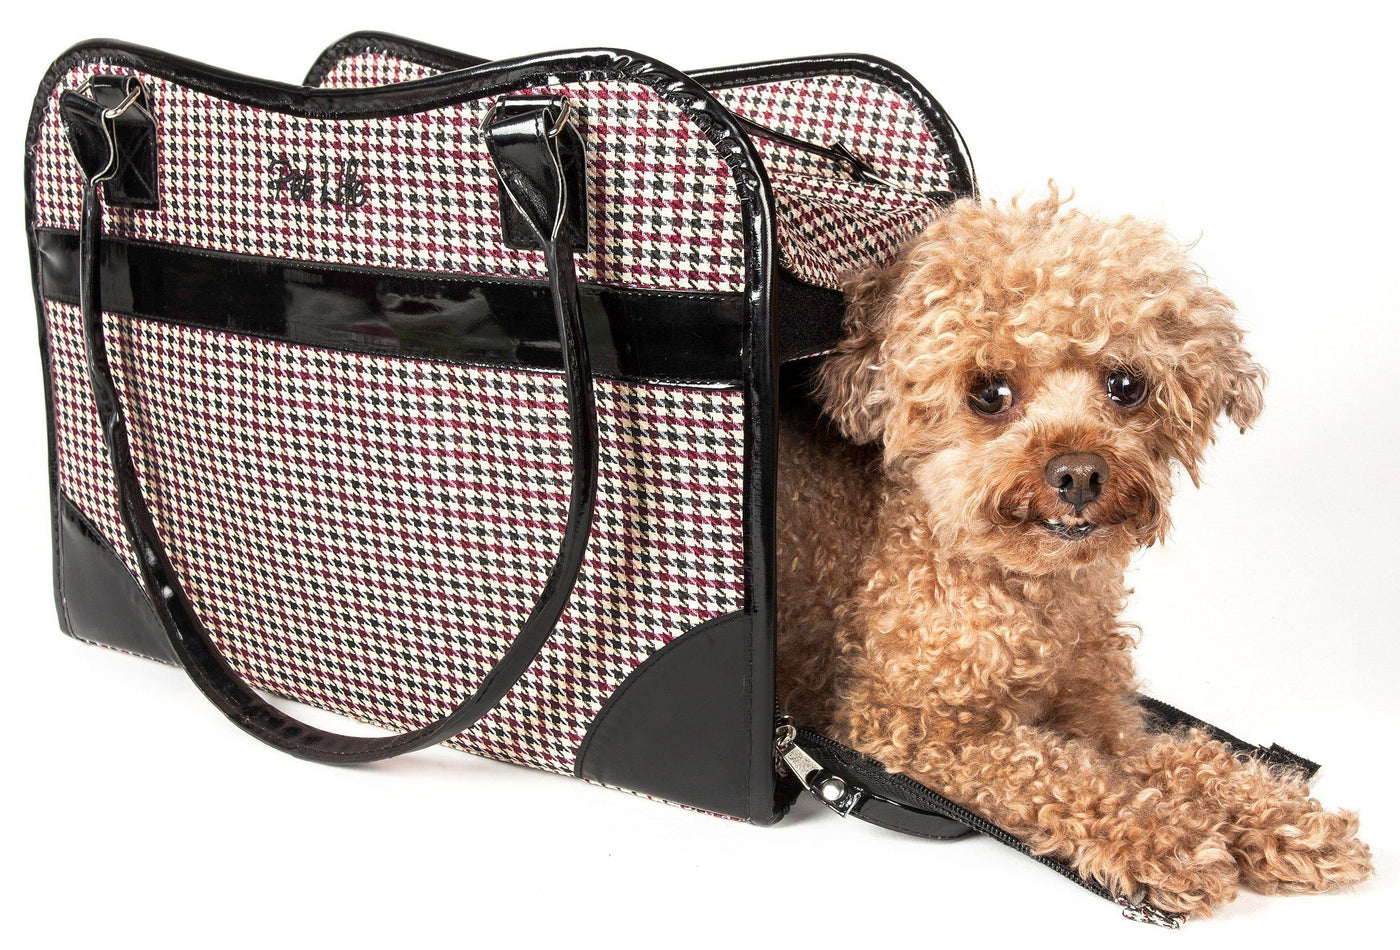 Touchdog 'Wiggle-Sack' Fashion Designer Front and Backpack Dog Carrier - Medium / Navy